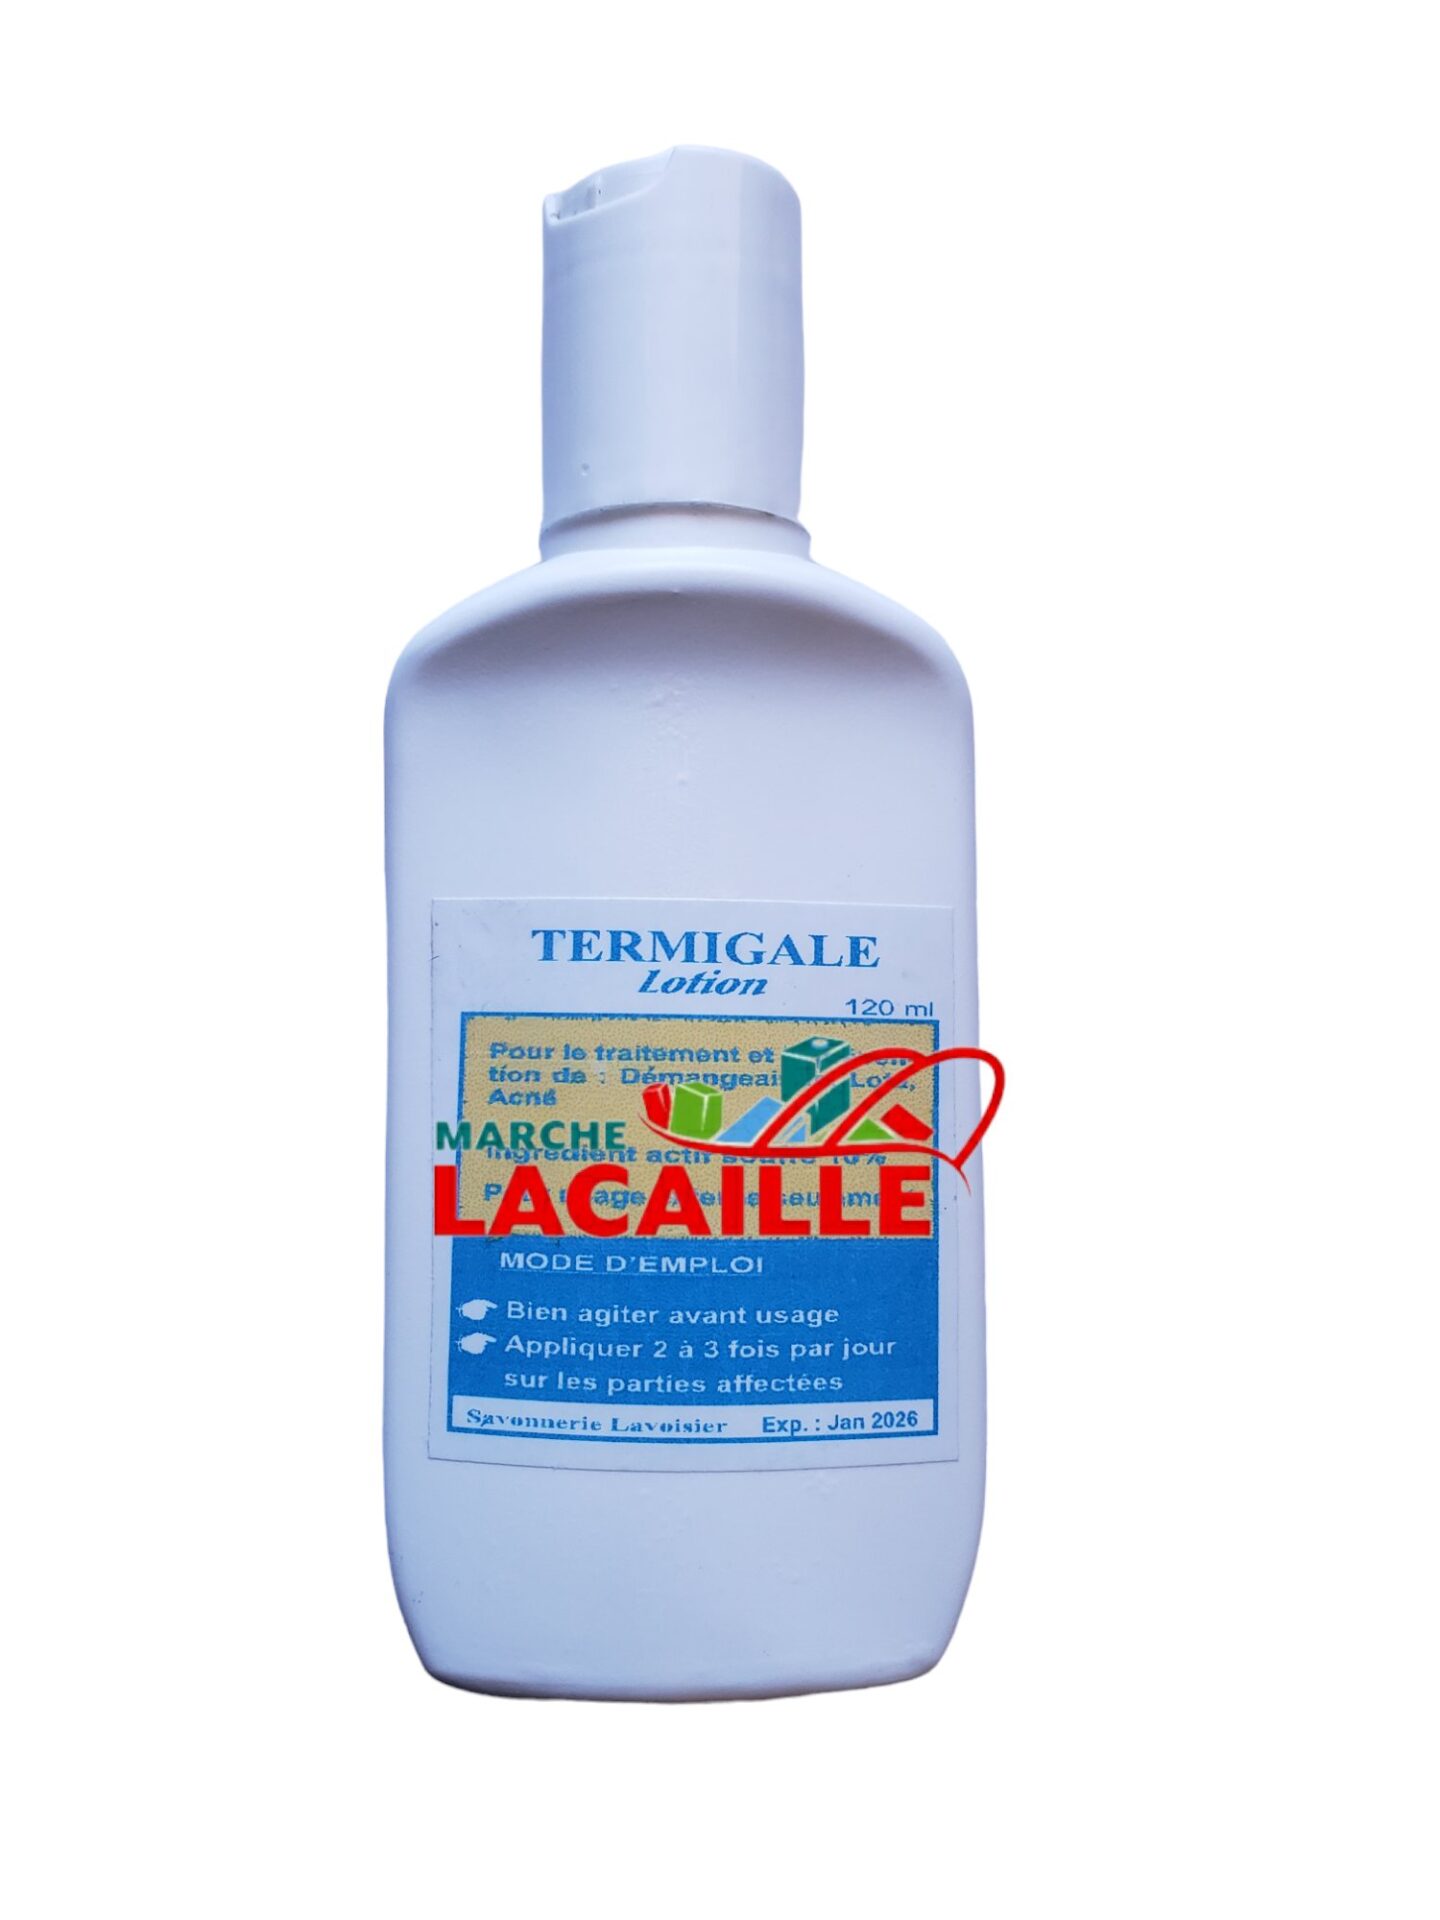 Termigale lotion - Haitian store